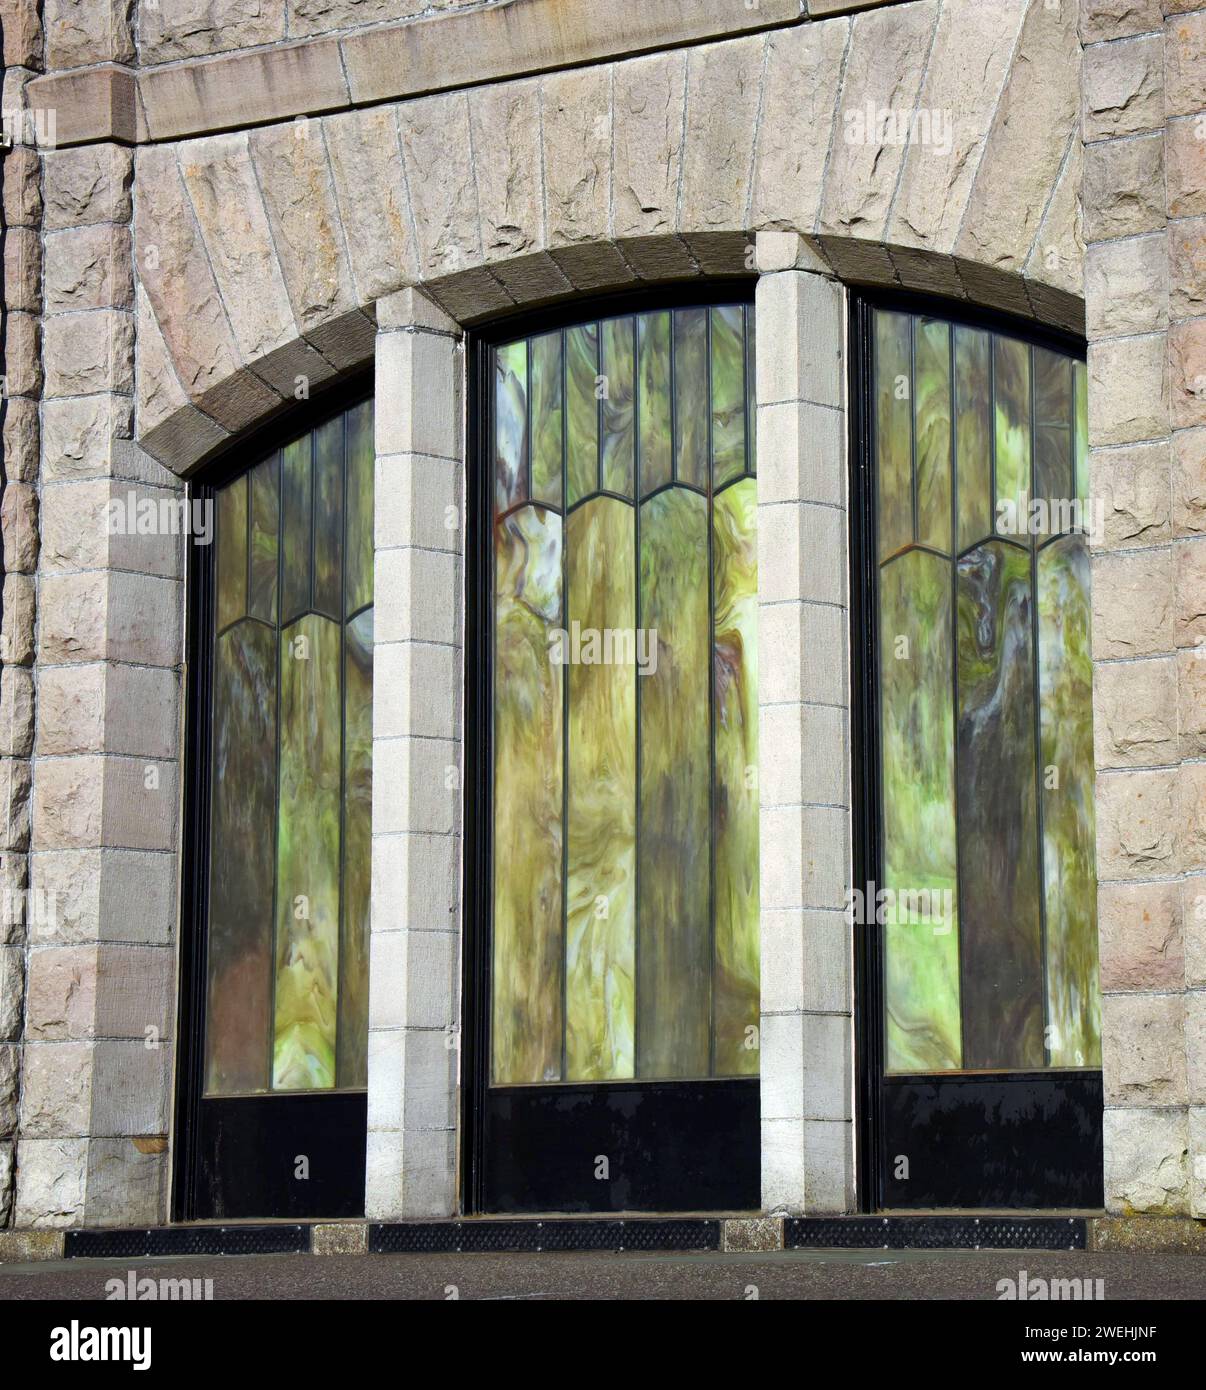 Las ventanas de vidrio verde y amarillo son parte de la hermosa arquitectura en el Observatorio Crown Point Vista House en Oregón. Foto de stock